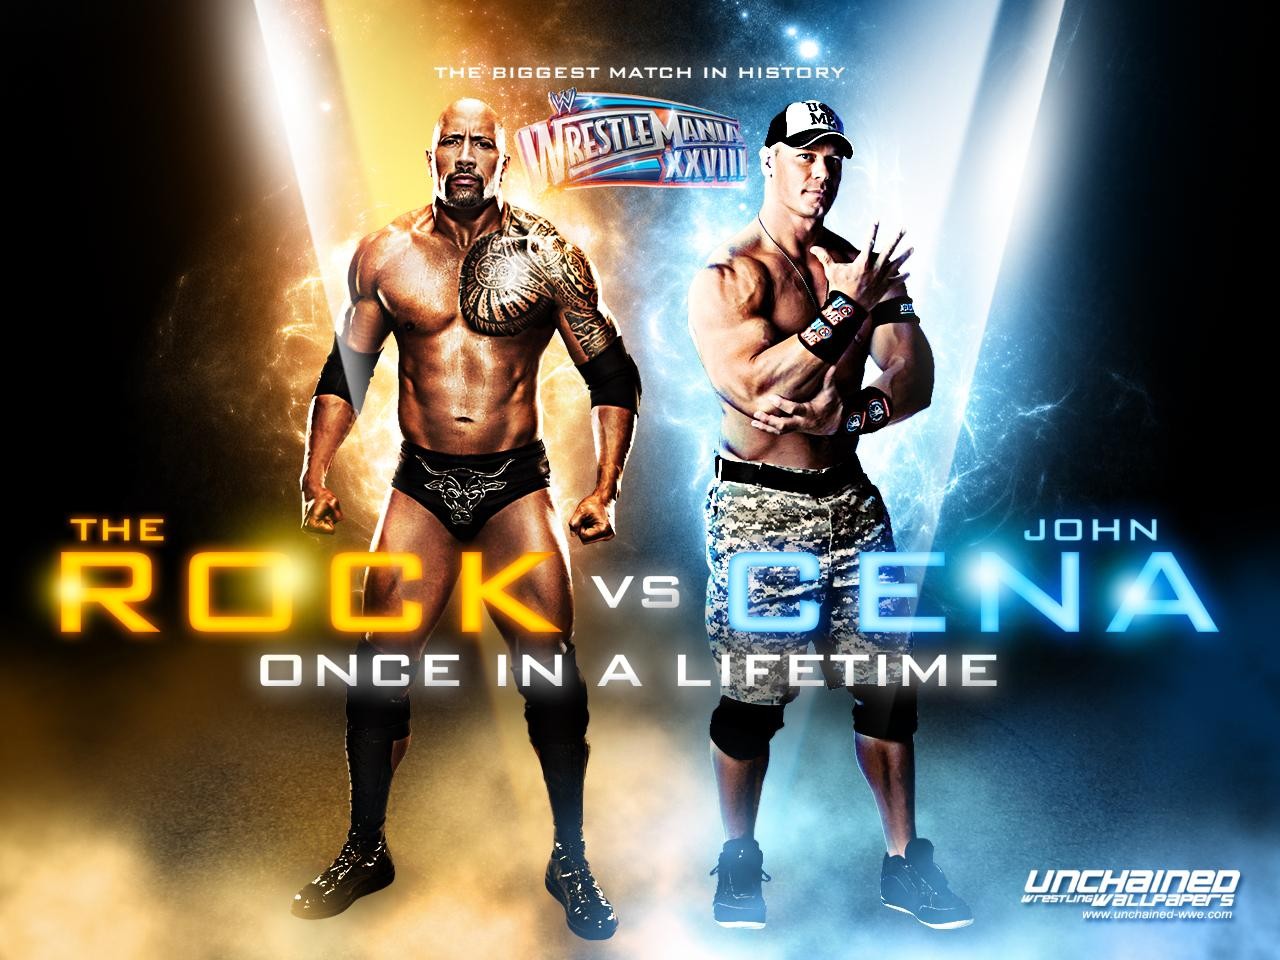 John Cena Vs The Rock